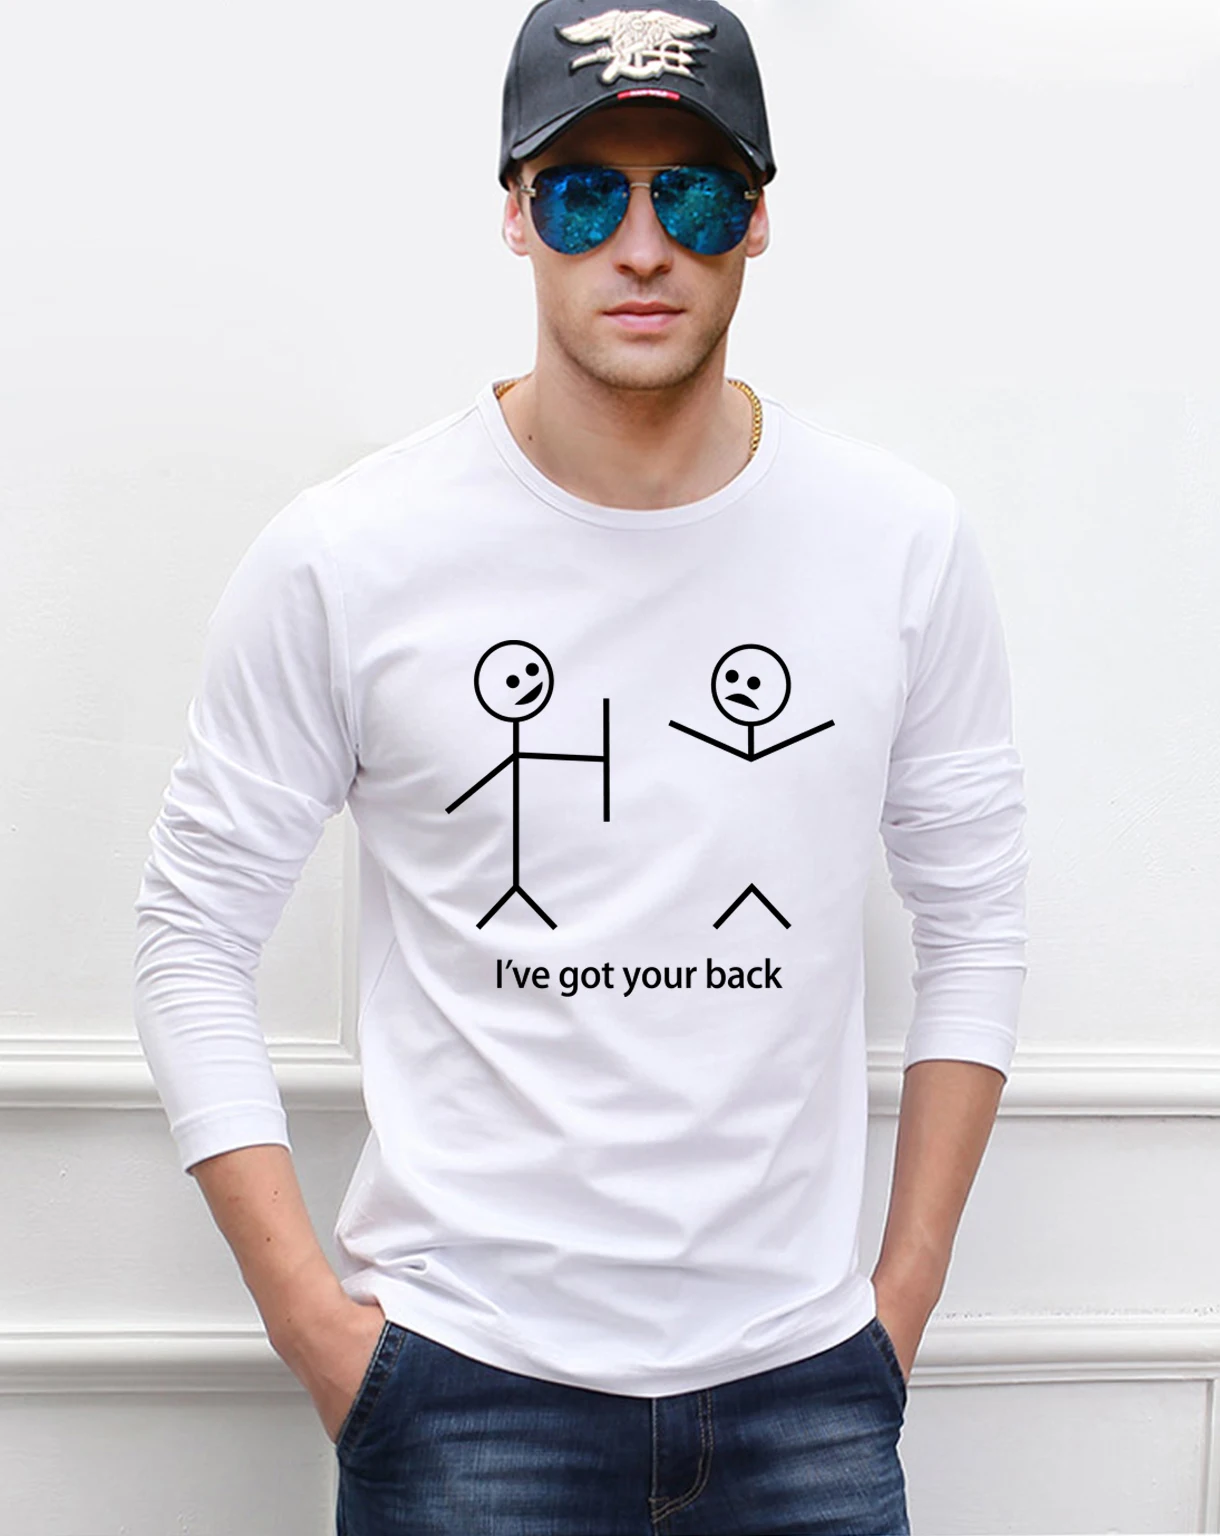 Забавные футболки нарисованные человечки для мужчин с длинным рукавом футболки 2019 Новые Весна 100% хлопок высокое качество человек